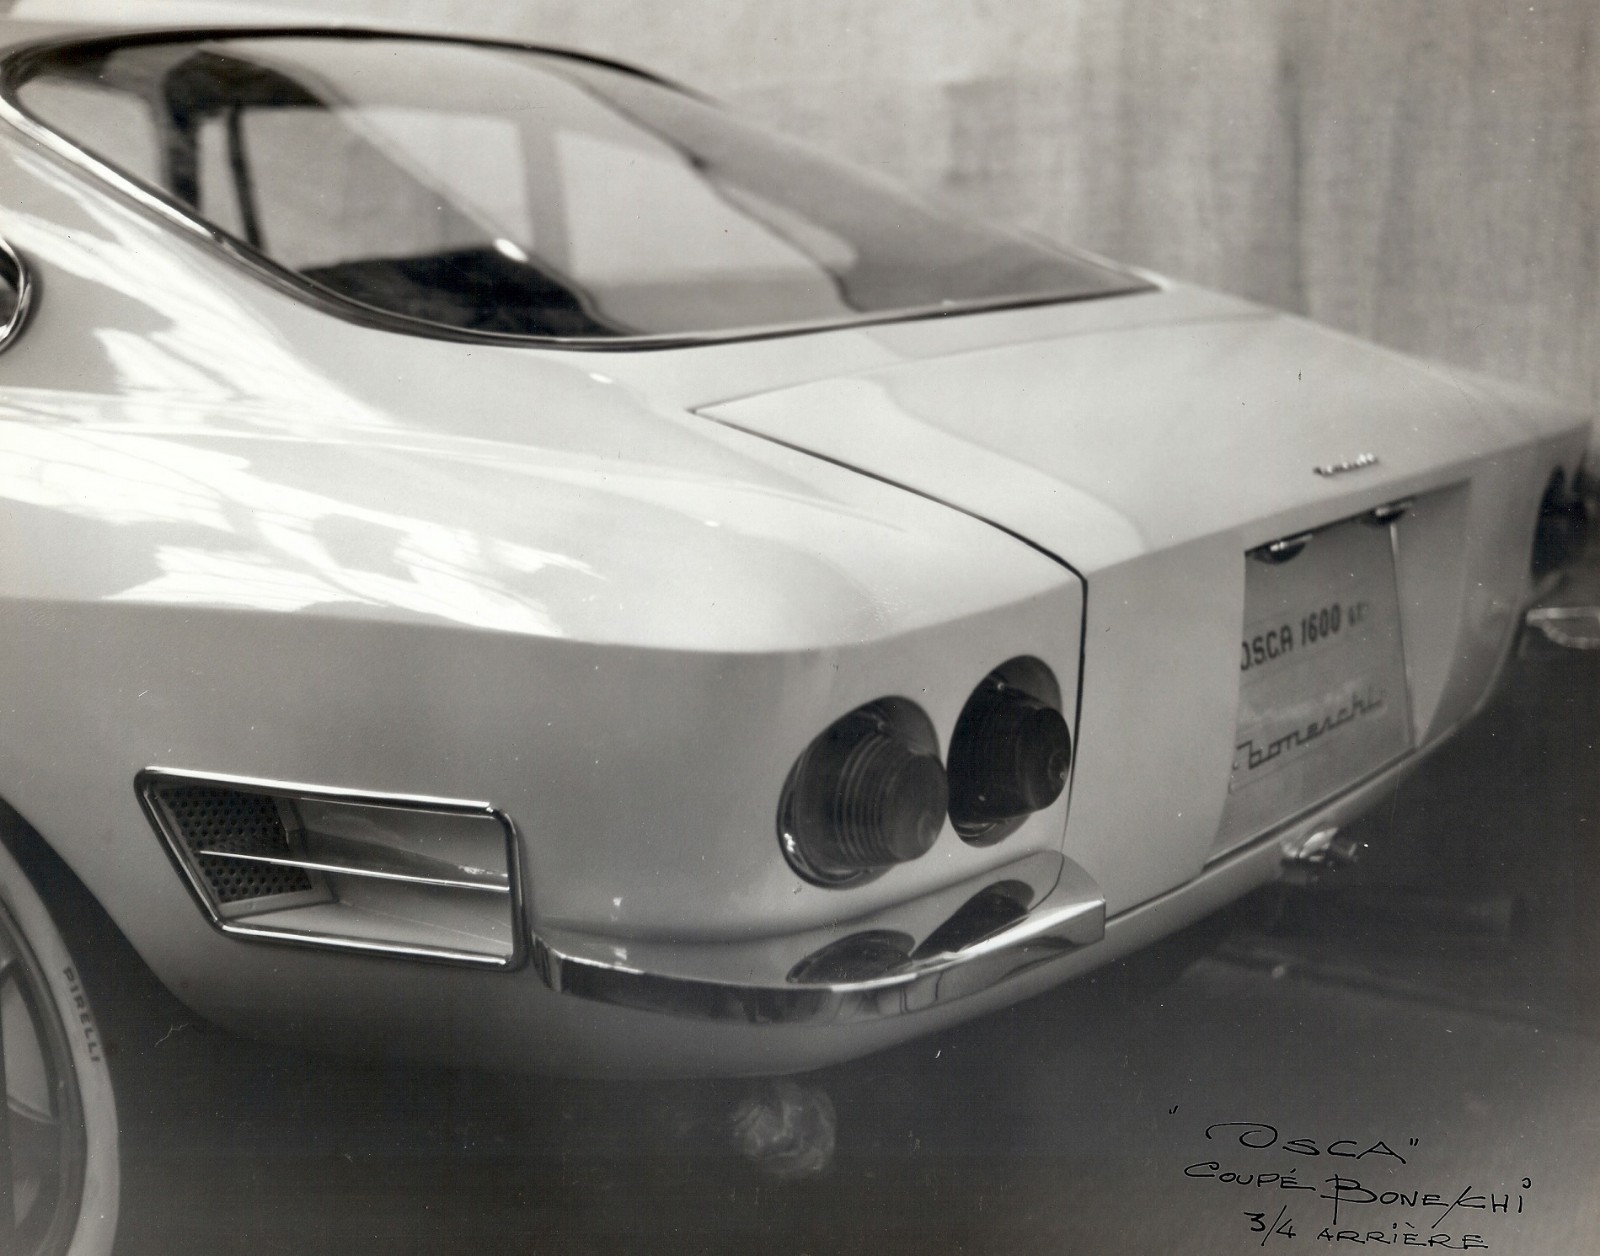 OSCA 1600 GT Berlinetta 'Swift' (Boneschi), 1961